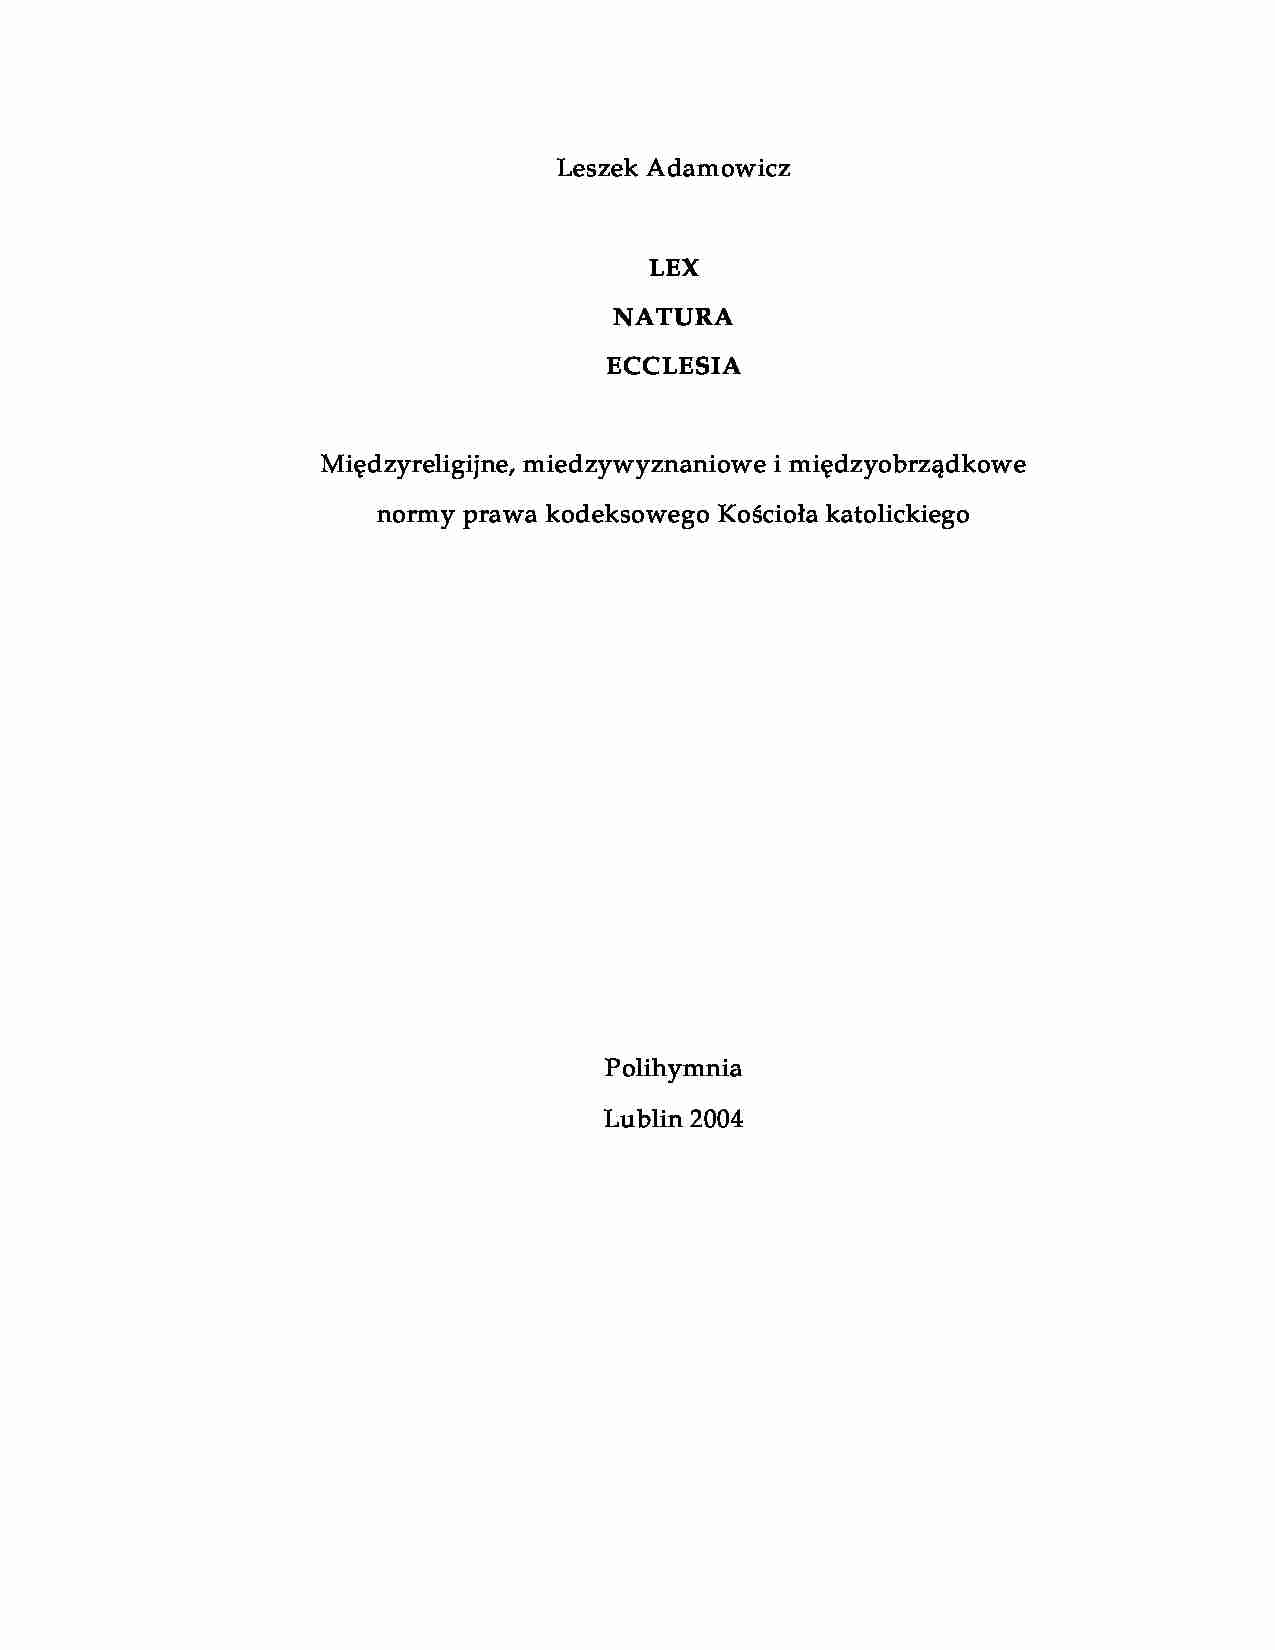 Lex natura ecclesia - omówienie  - strona 1